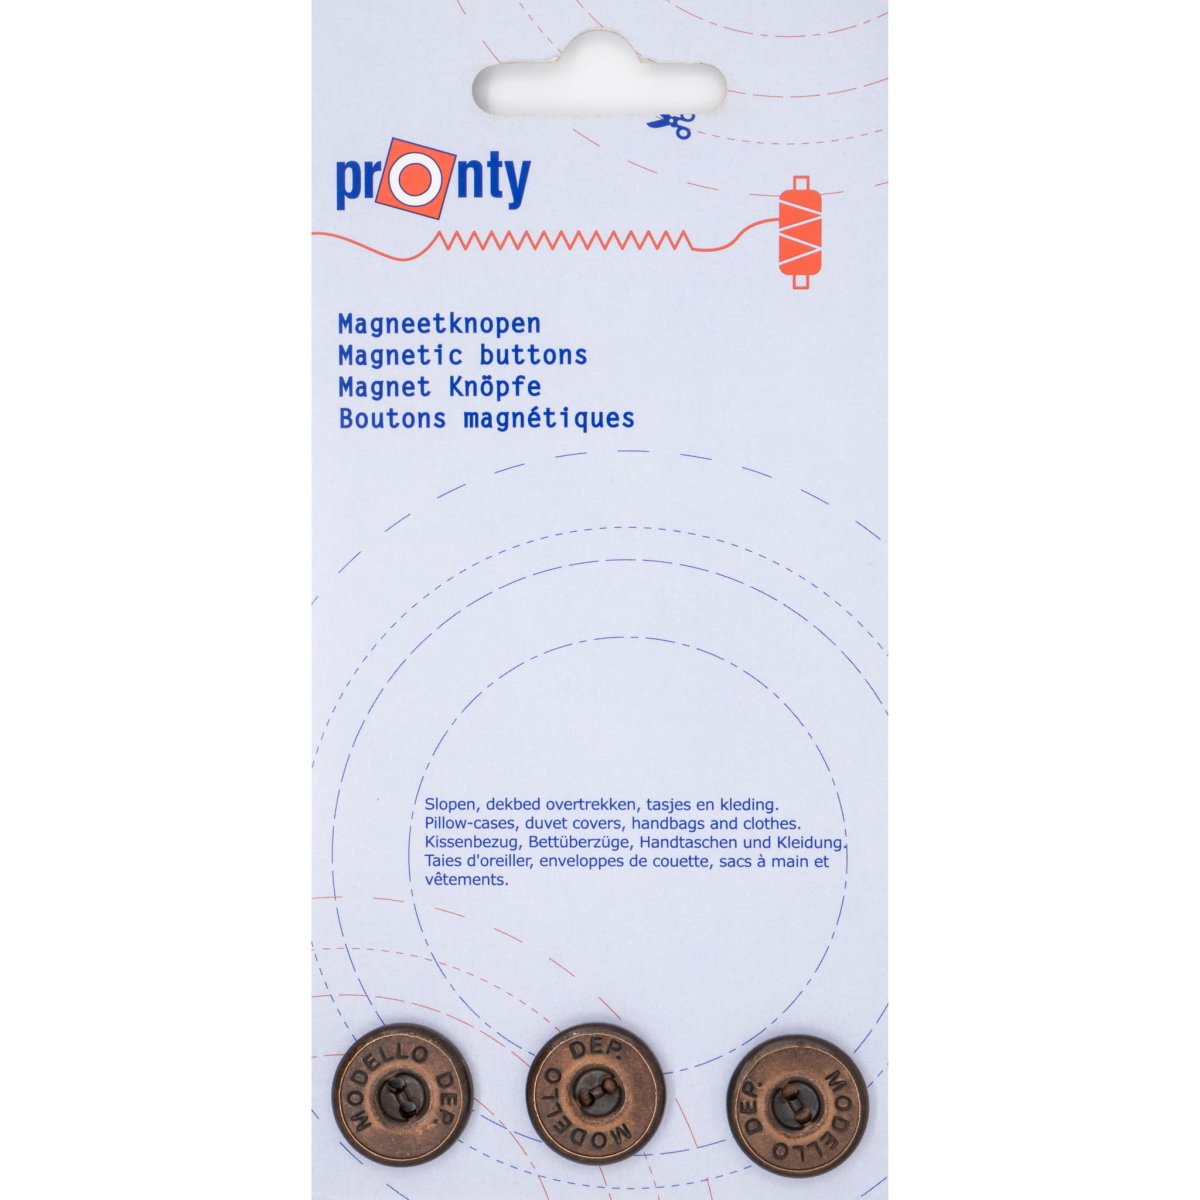 Magneet knopen brons 18mm Pronty 3 stuks Knopen MAGNEETKNPN-PRONTY-BRONS 8714772063867 - Fourniturenkraam.nl